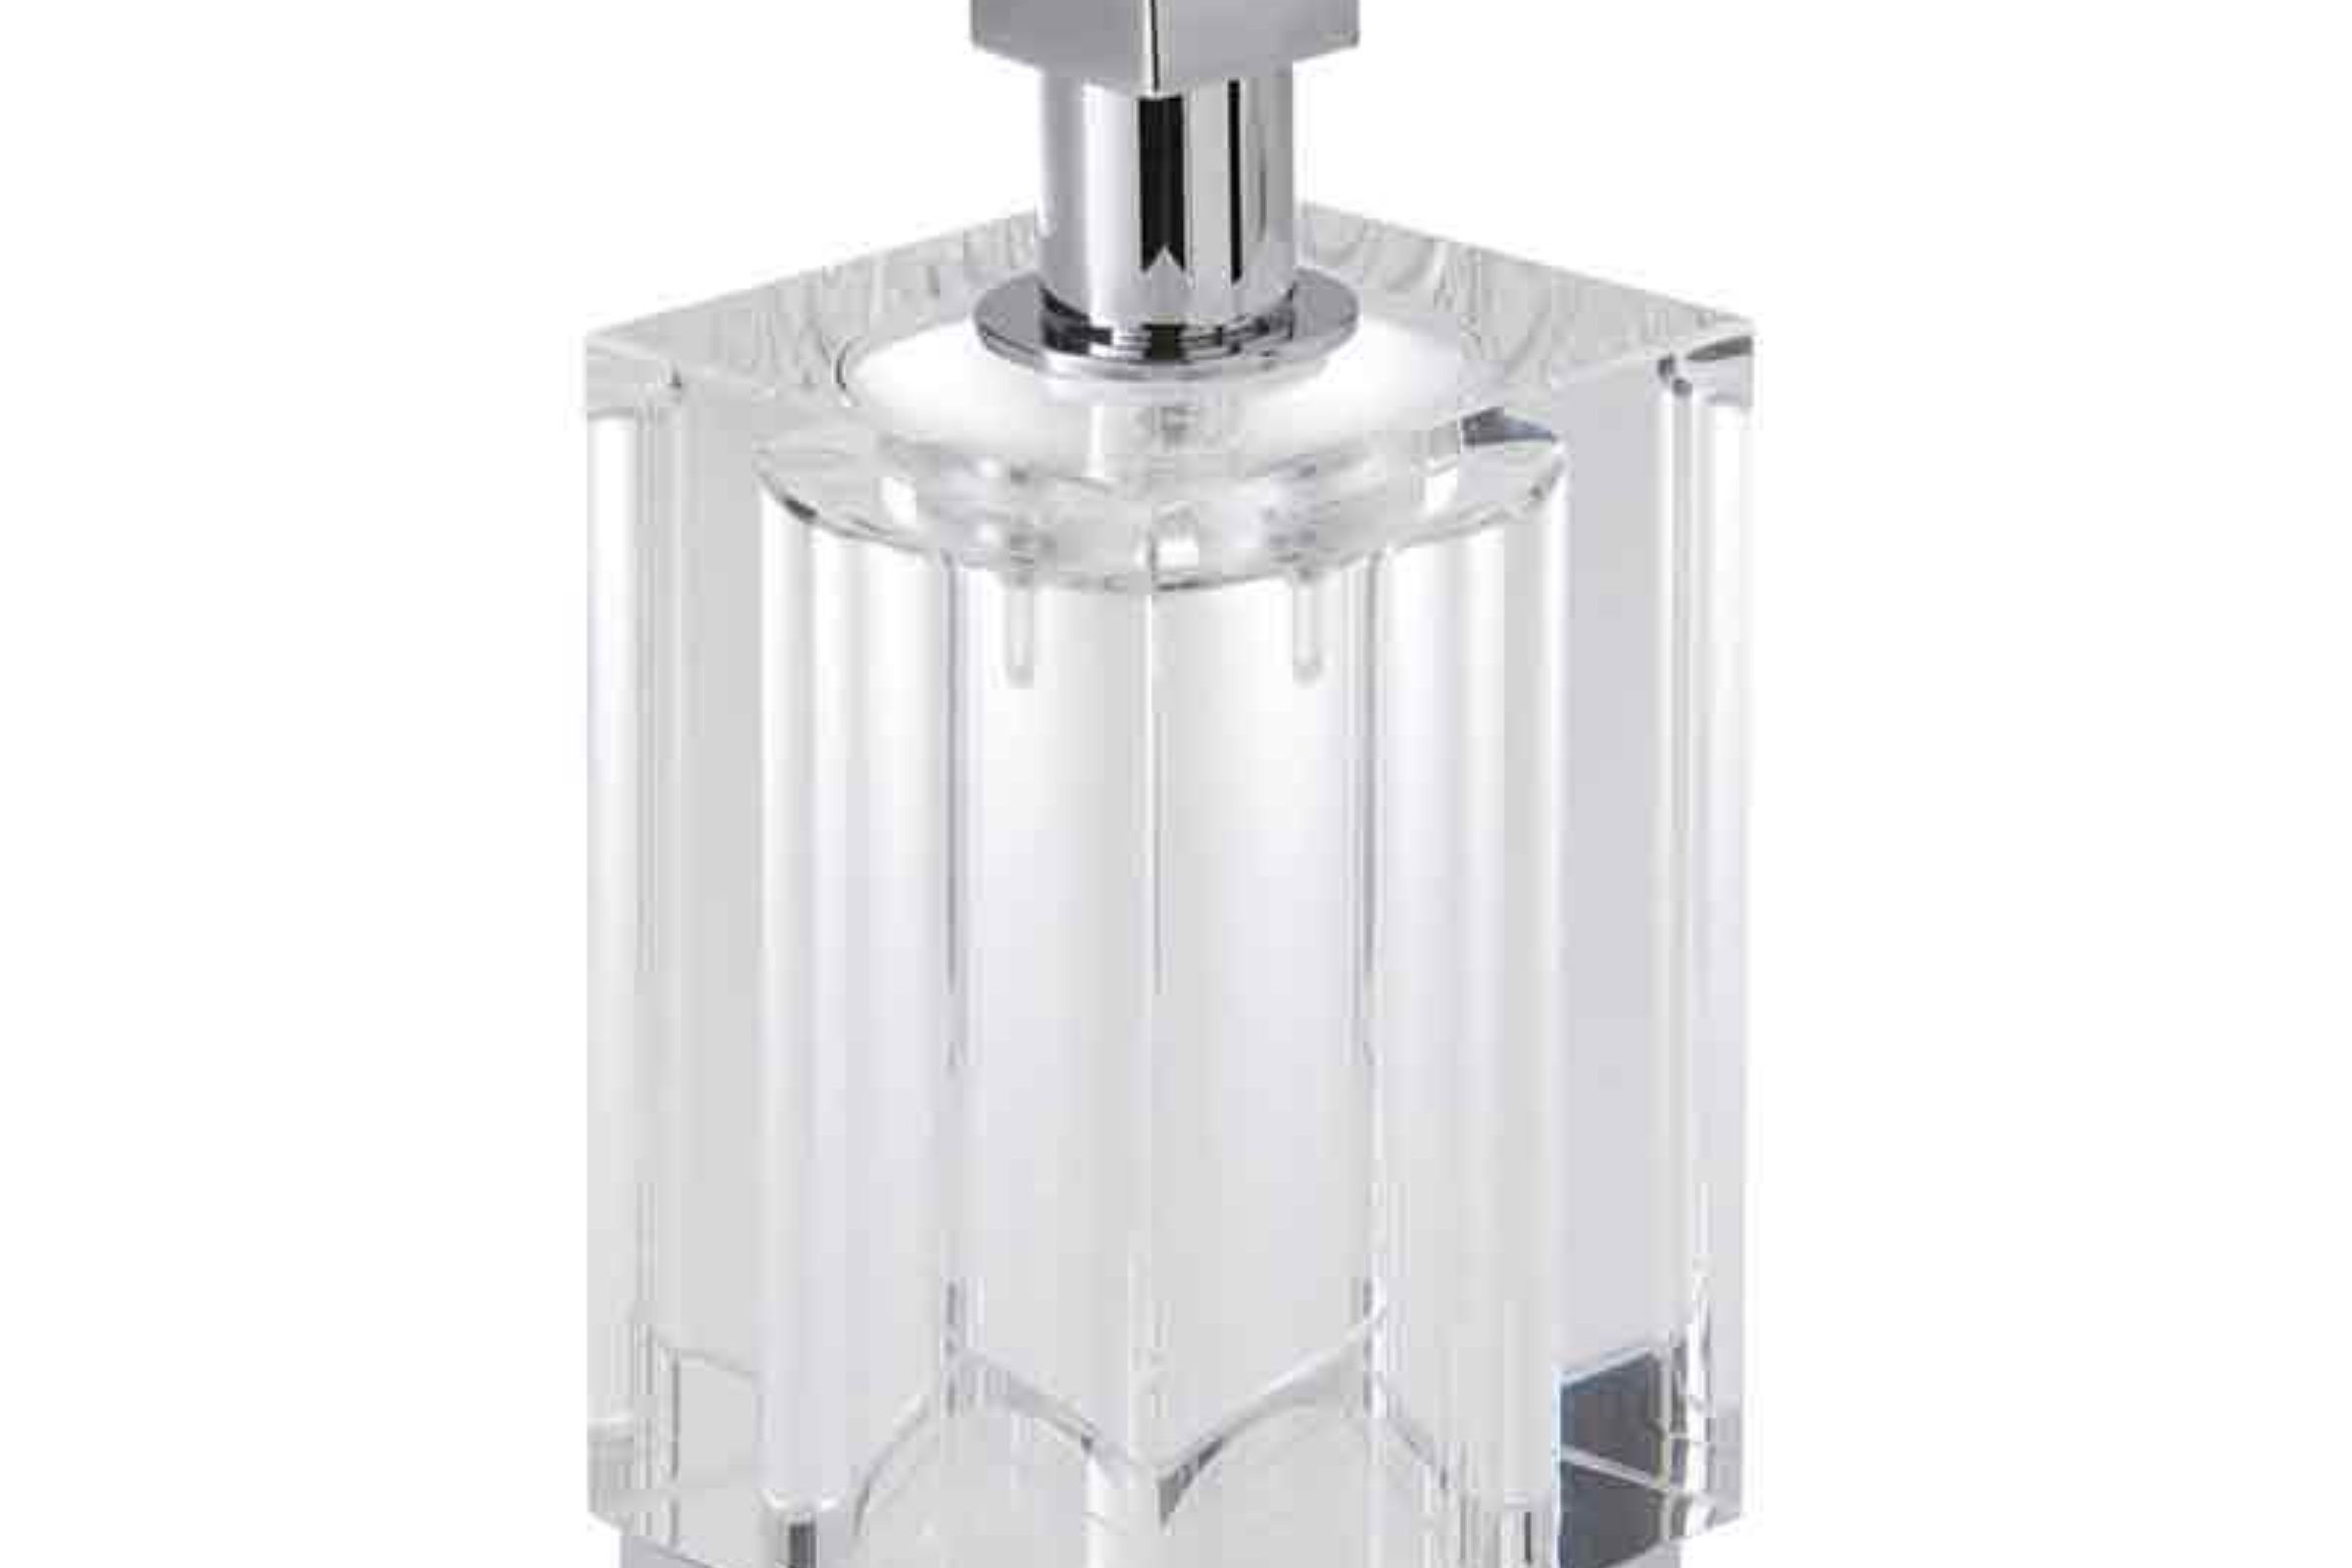 dosatore vetro appoggio rest standing liquid soap dispenser in glass cm. 6,5x8x17 TIFFANY